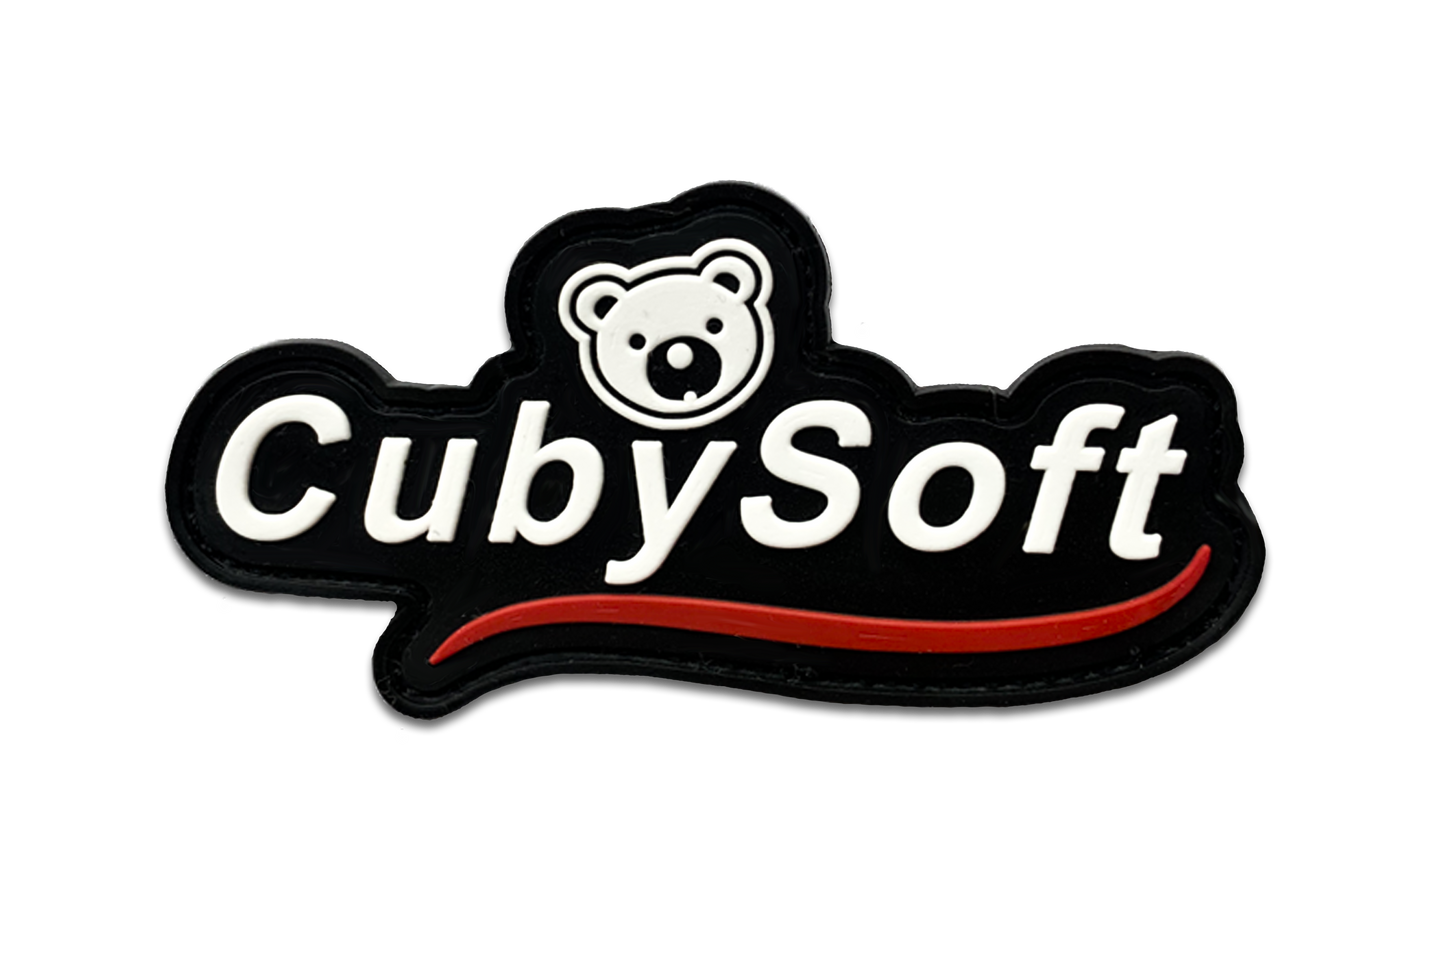 CubySoft® ORIGINAL PVC PATCH